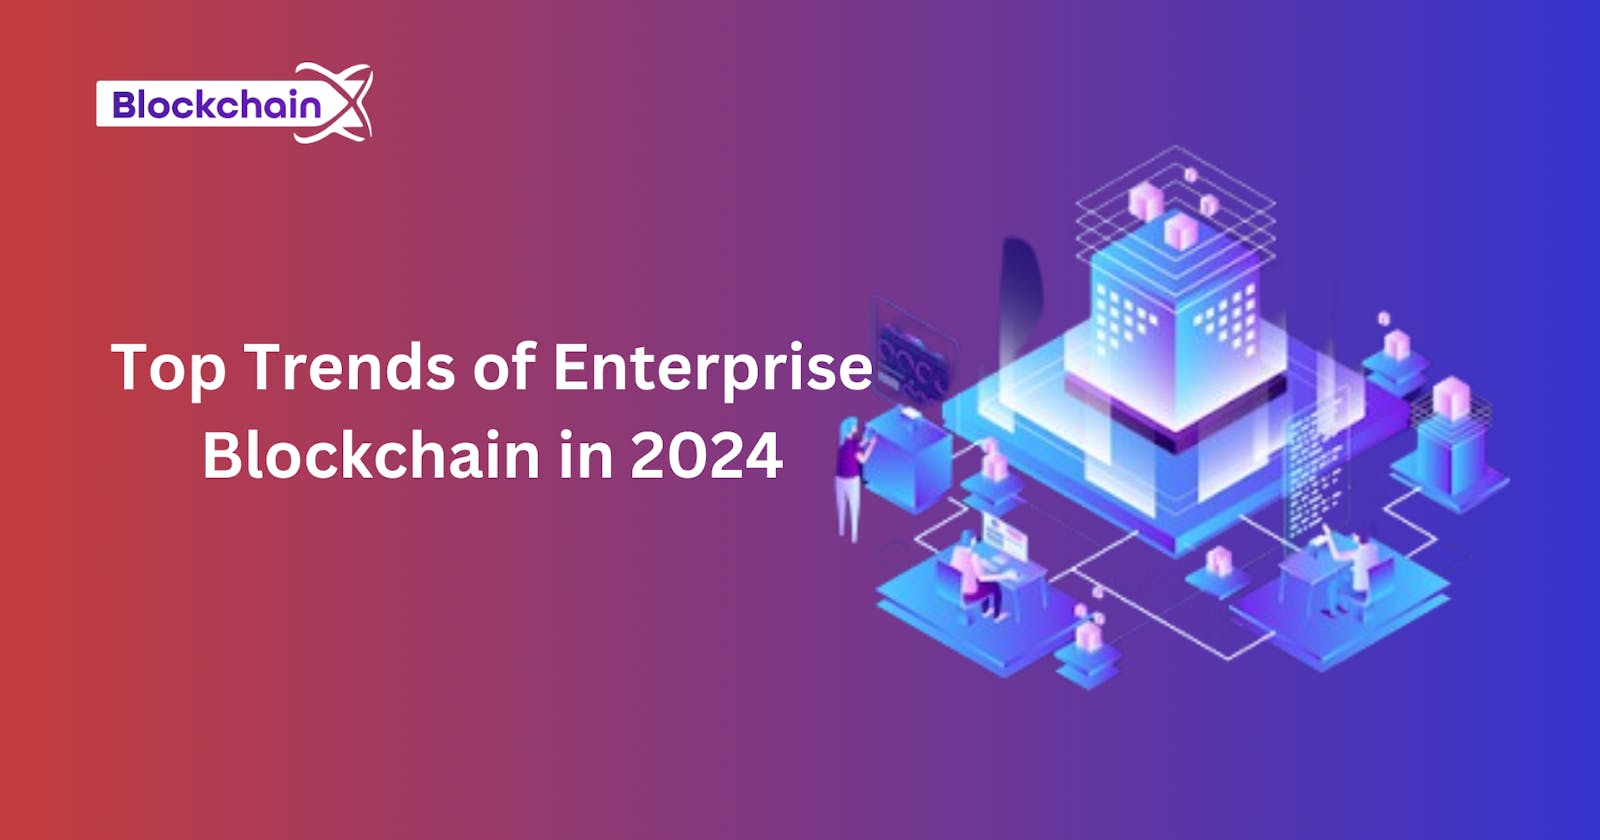 Top Trends of Enterprise Blockchain in 2024